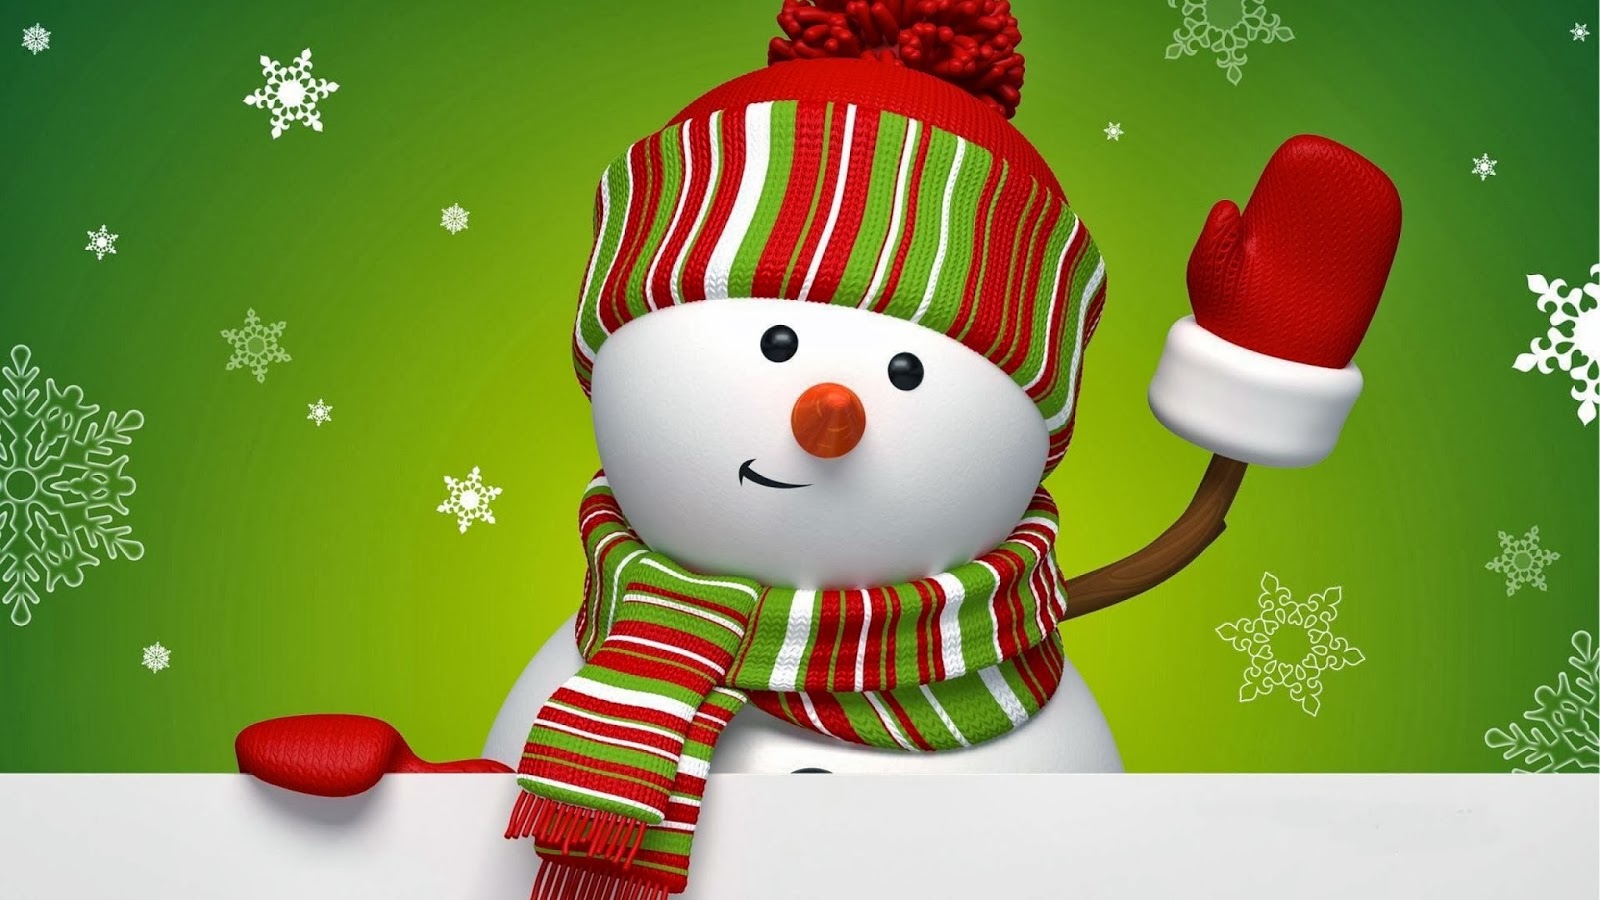 carta da parati pupazzo di neve di natale,natale,pupazzo di neve,personaggio fittizio,decorazione natalizia,confetteria